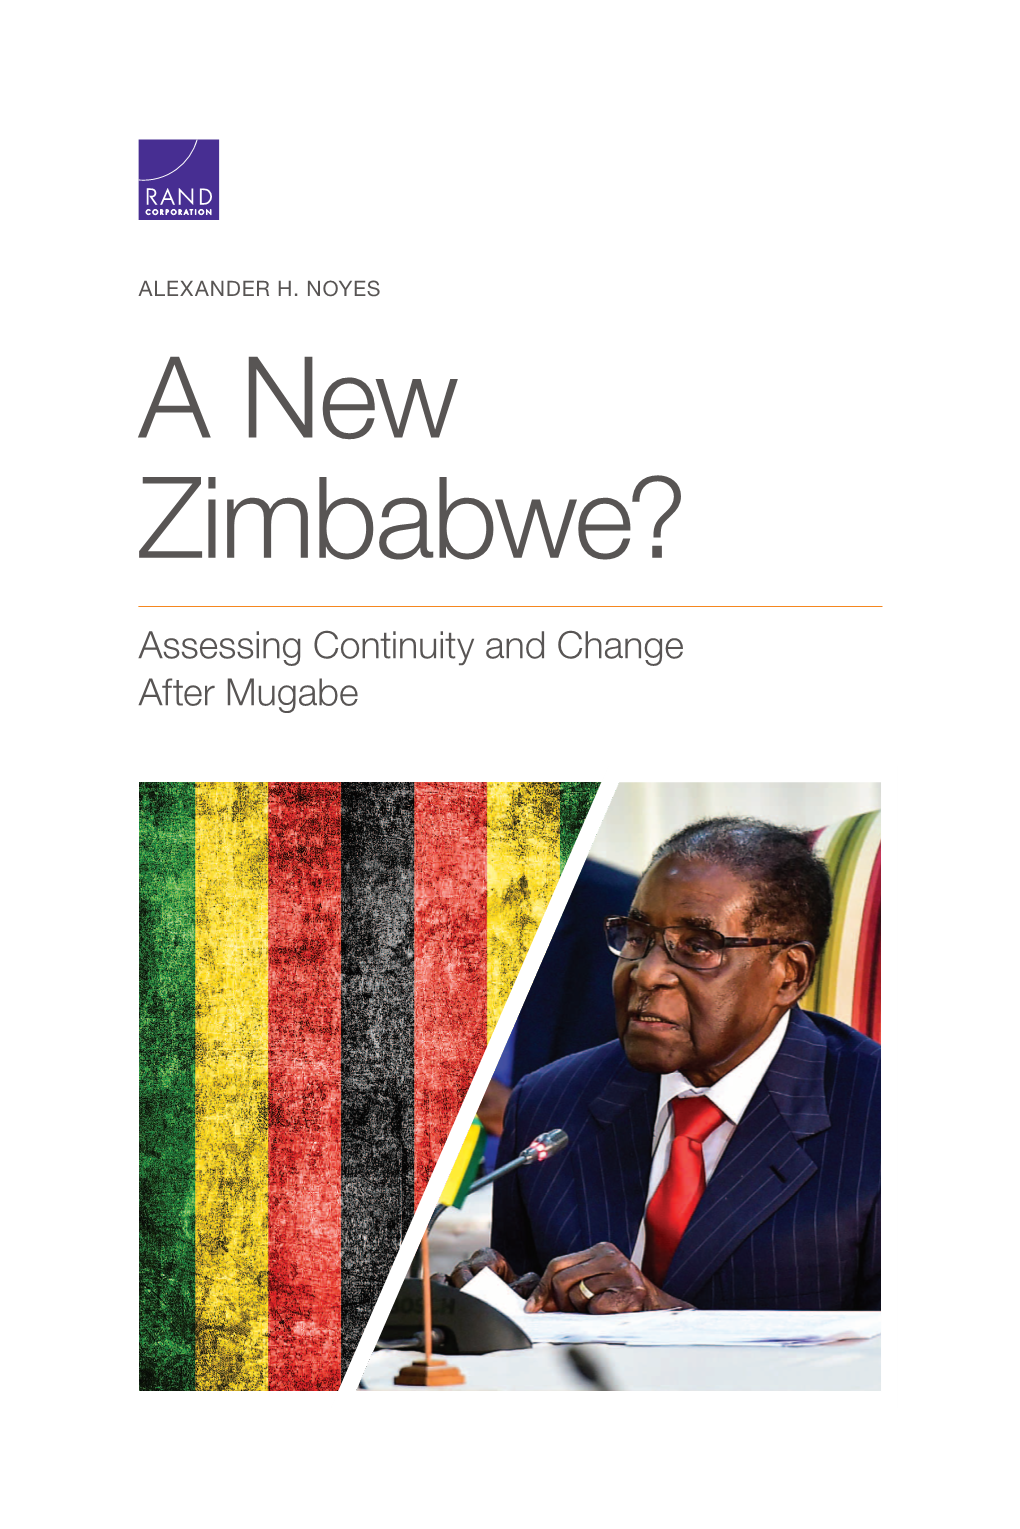 A New Zimbabwe? Assessing Continuity and Change After Mugabe